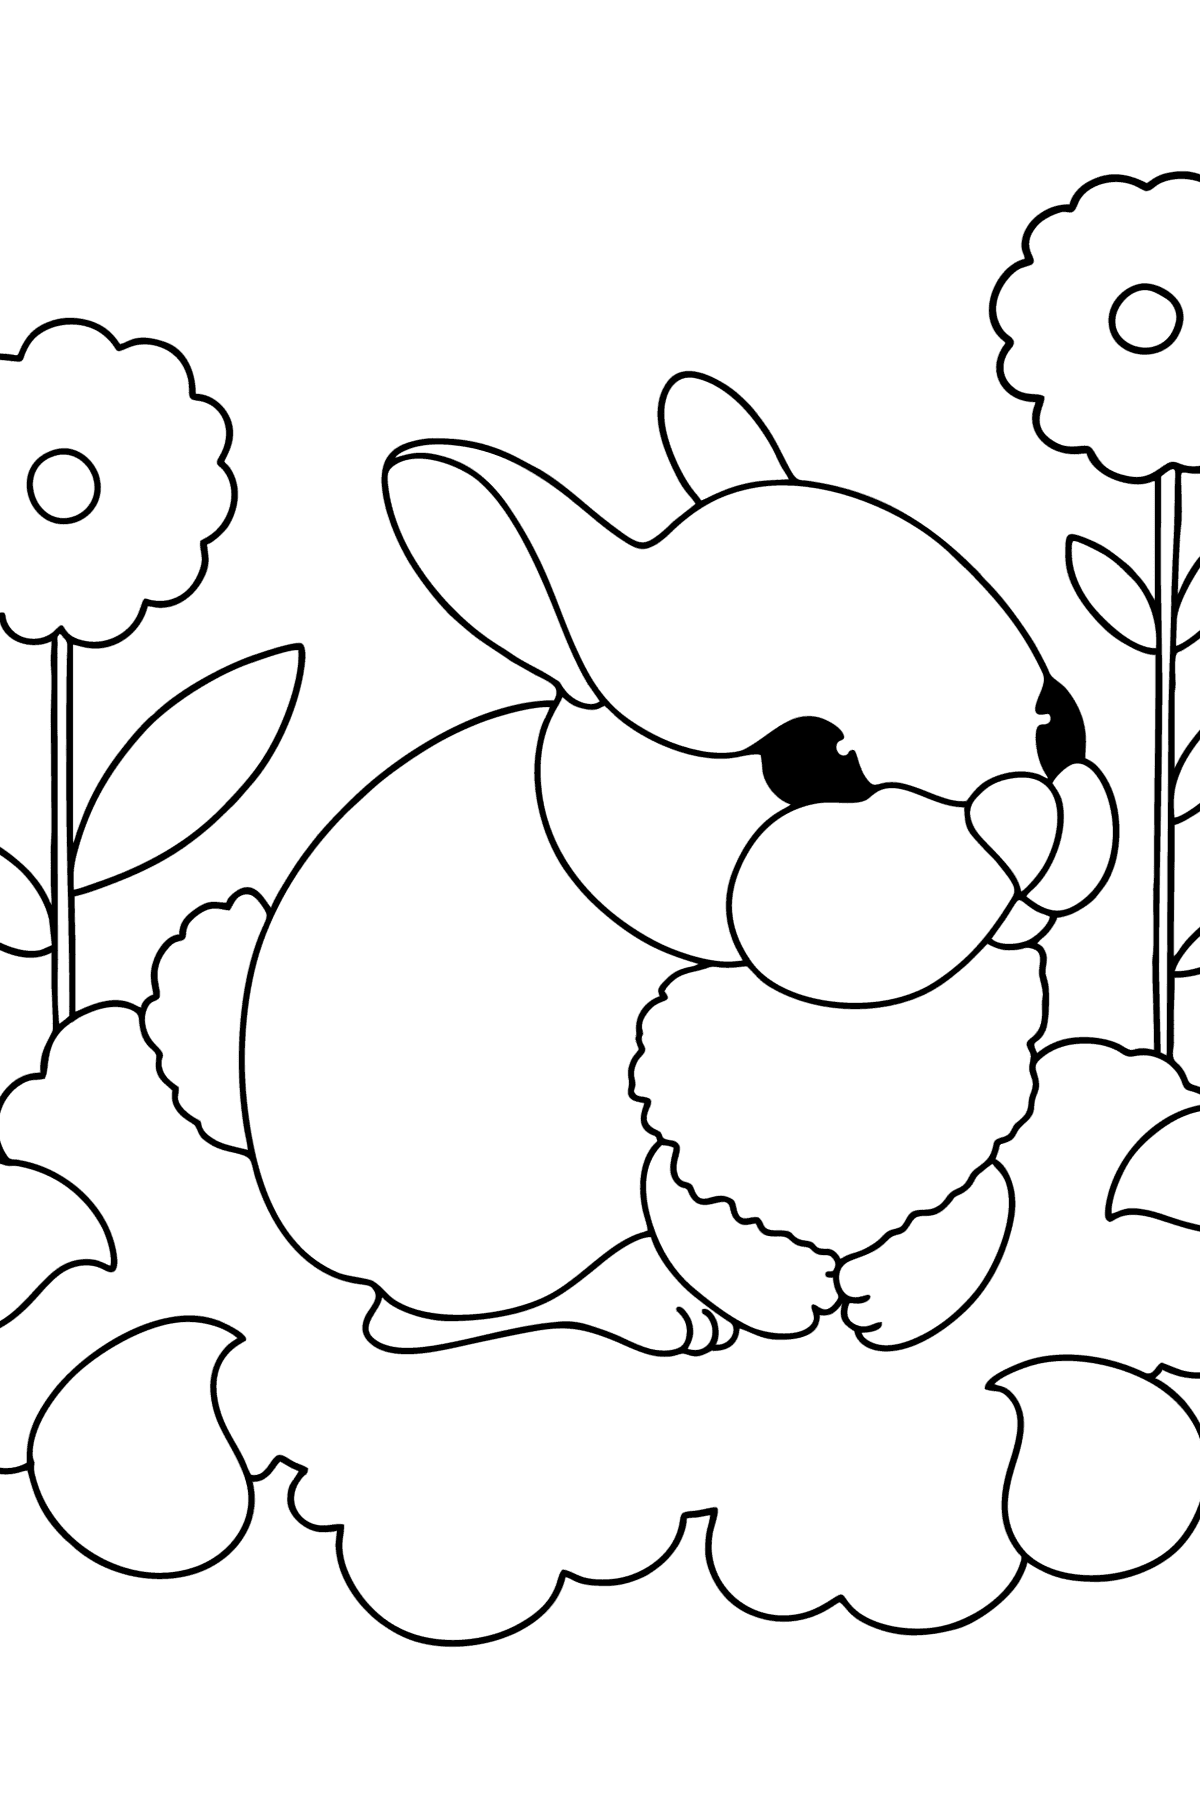 Desenho para colorir de coelhinho - Imagens para Colorir para Crianças